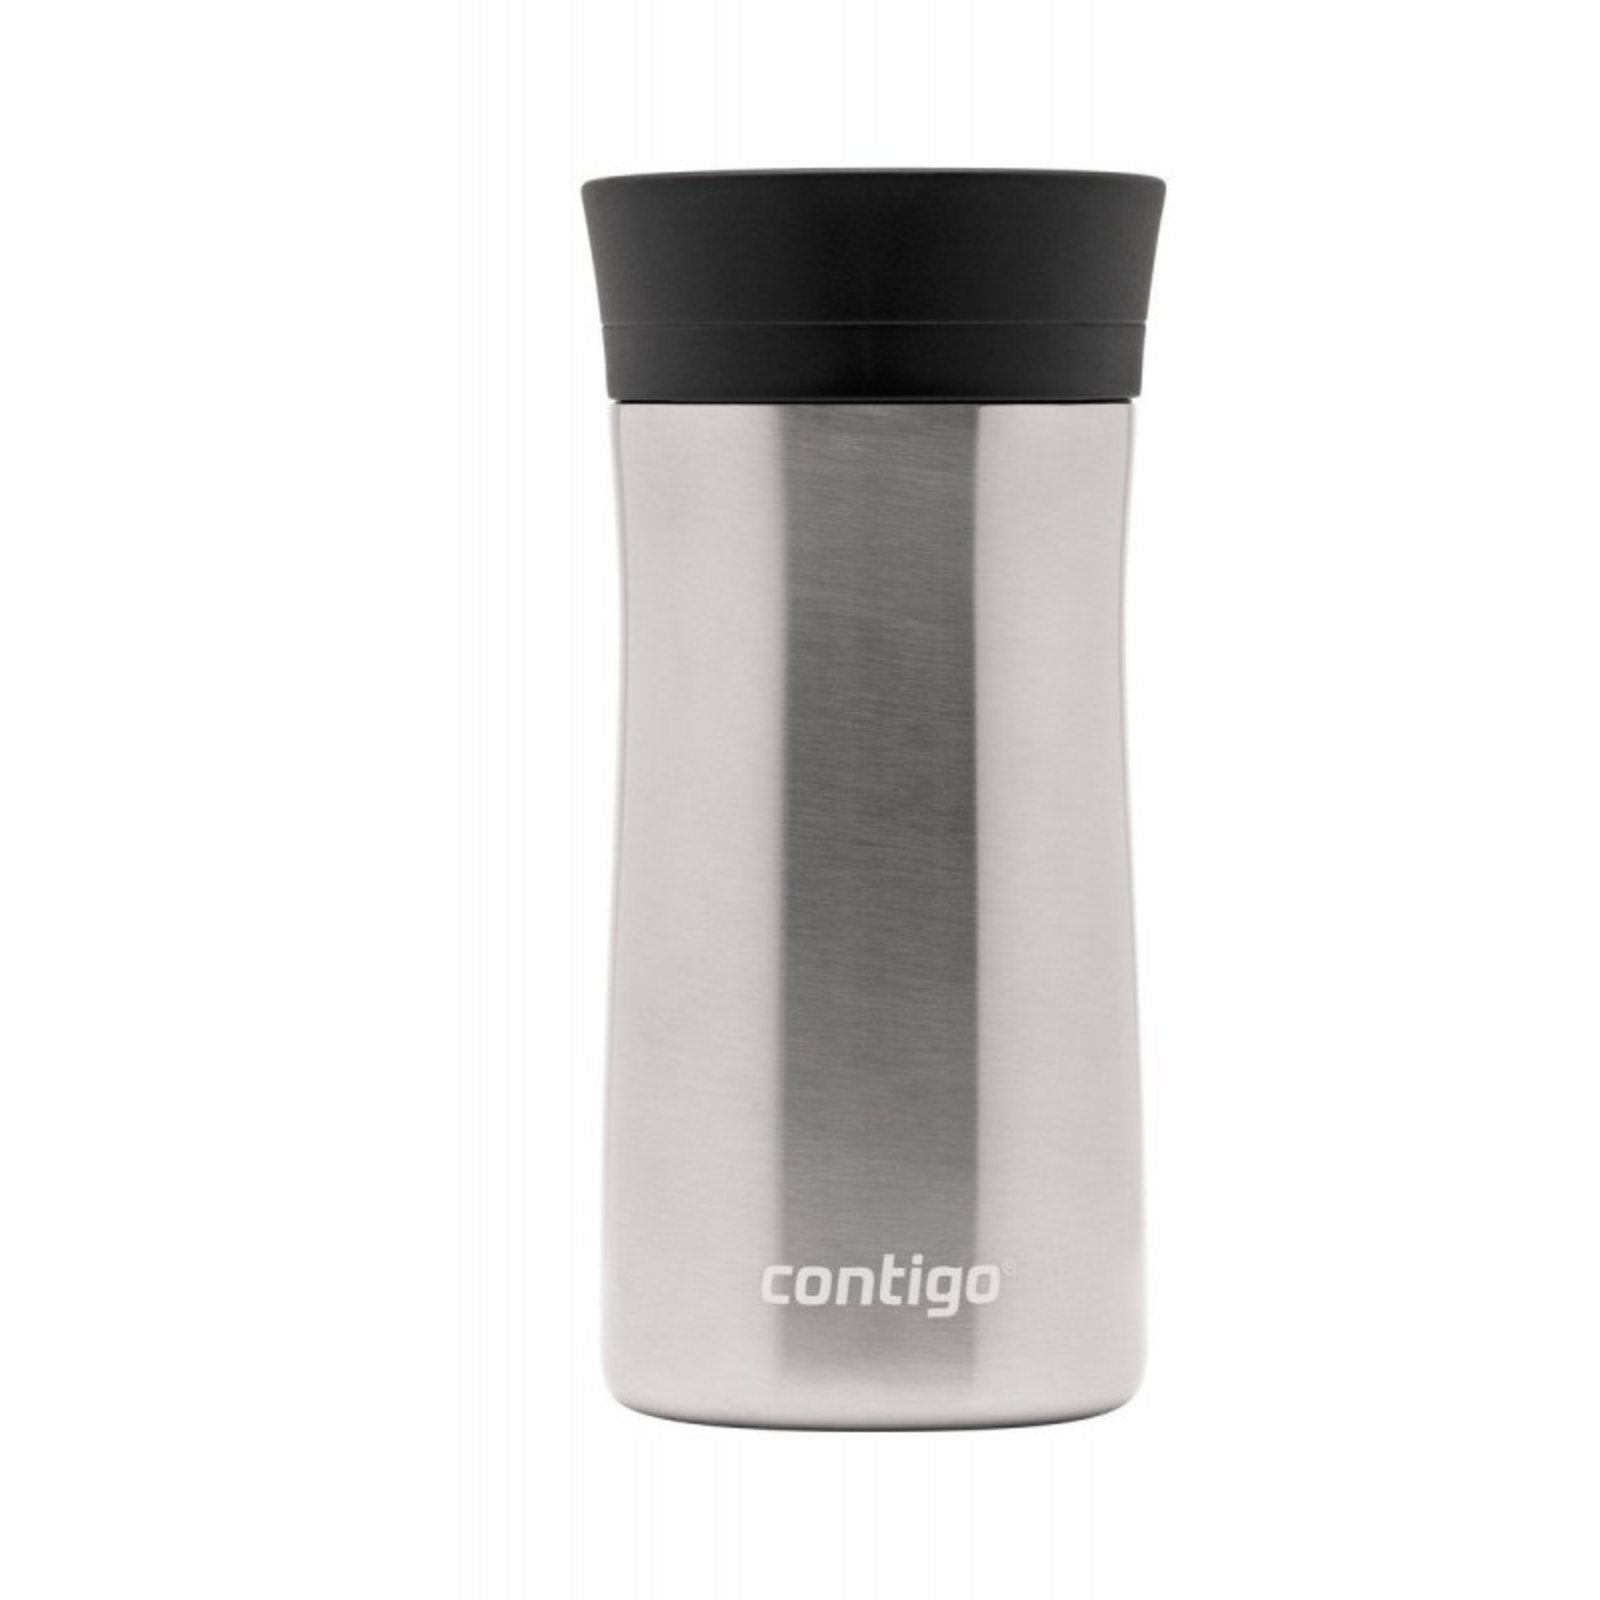 Contigo Autoseal Pinnacle Travel Mug 300ml